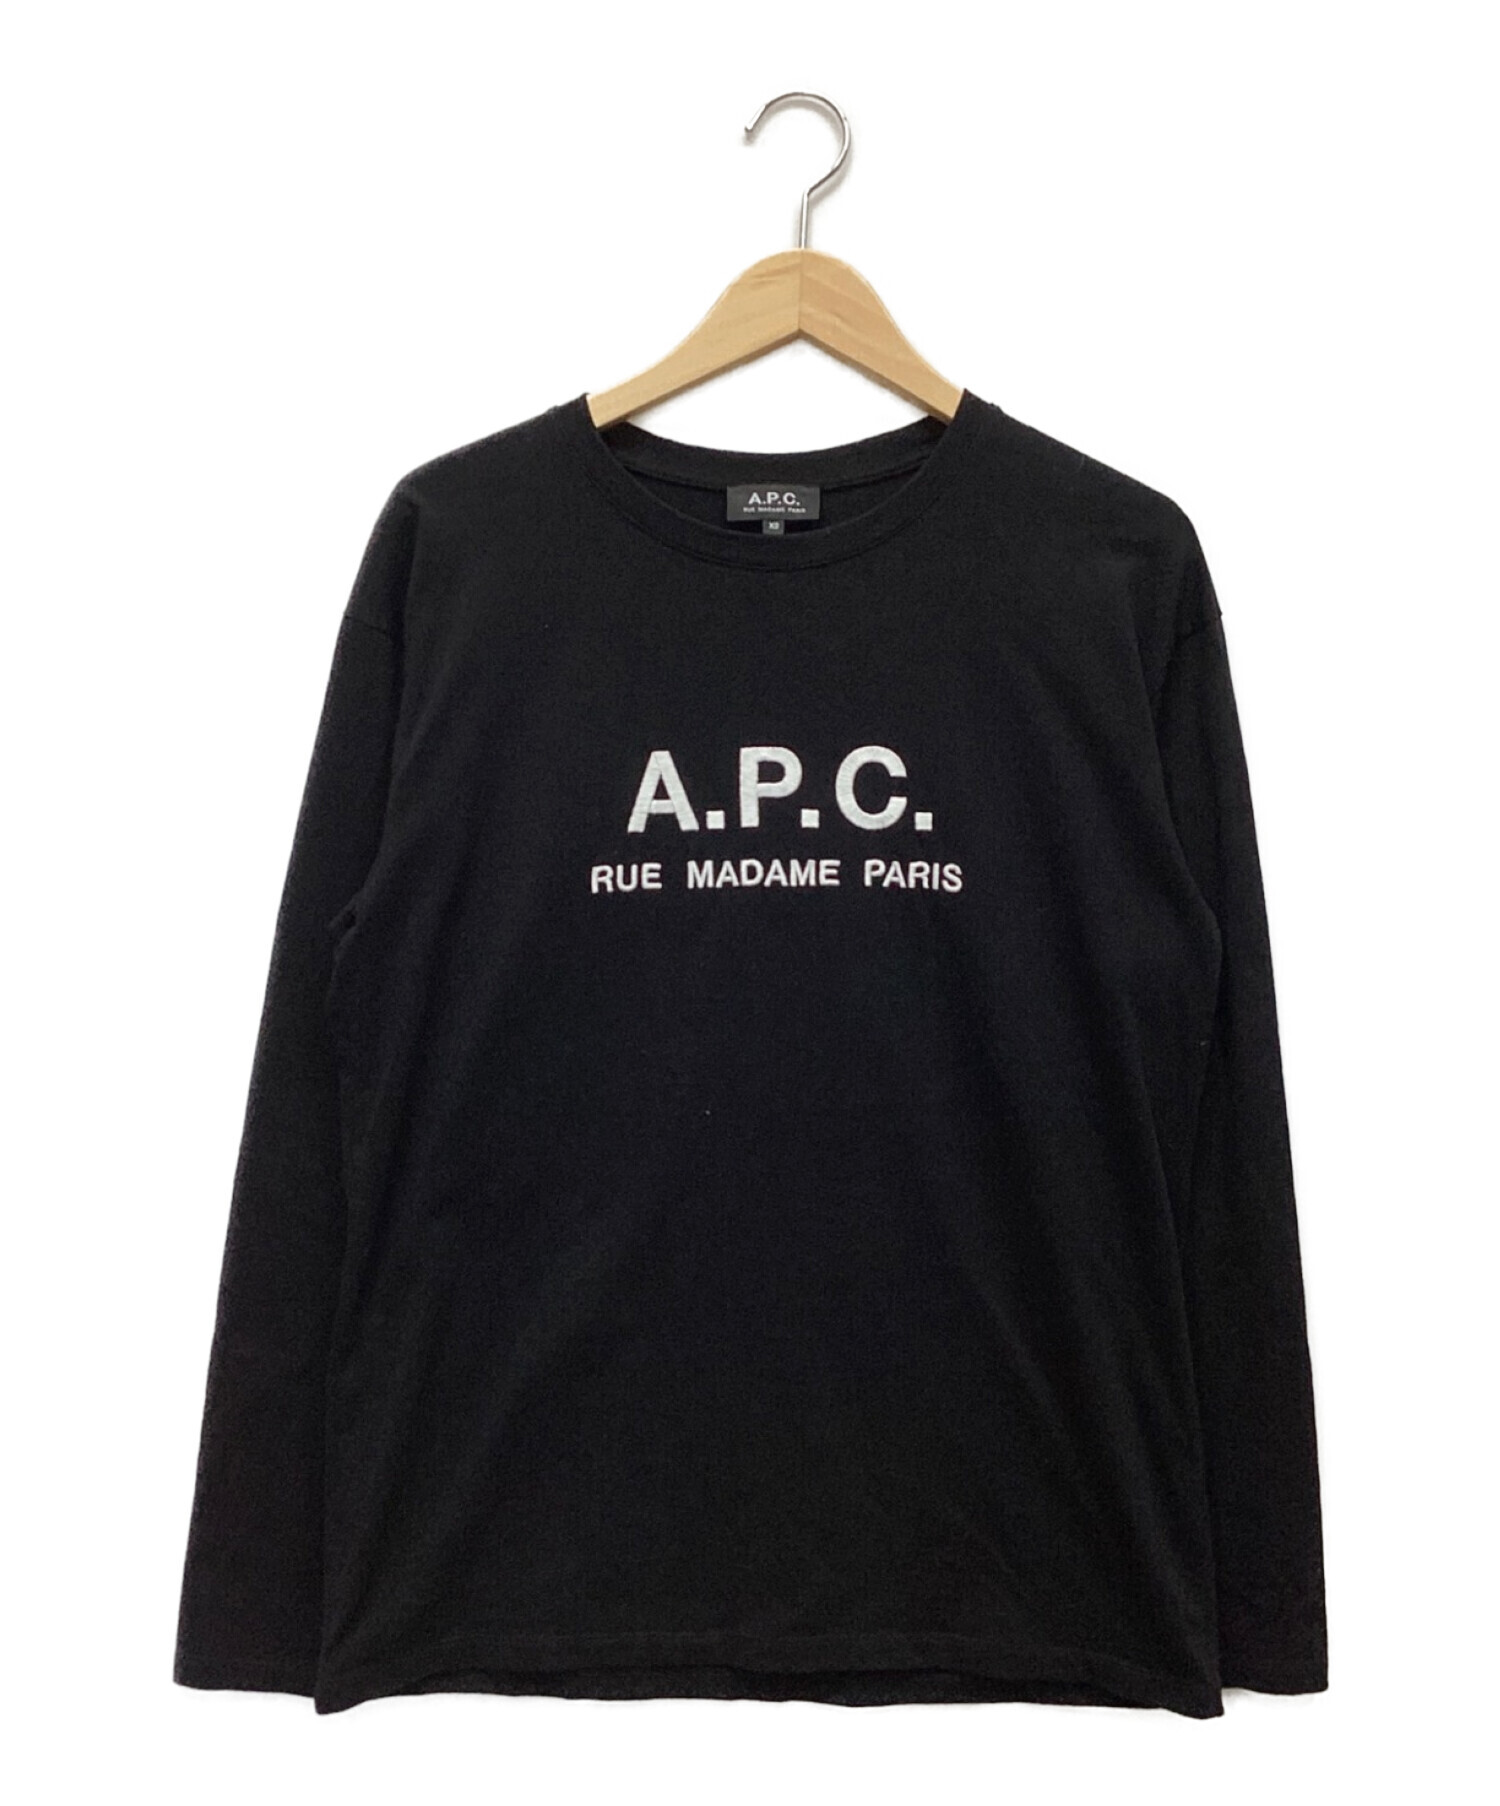 A.P.C. (アー・ペー・セー) ロングスリーブカットソー ブラック サイズ:XS